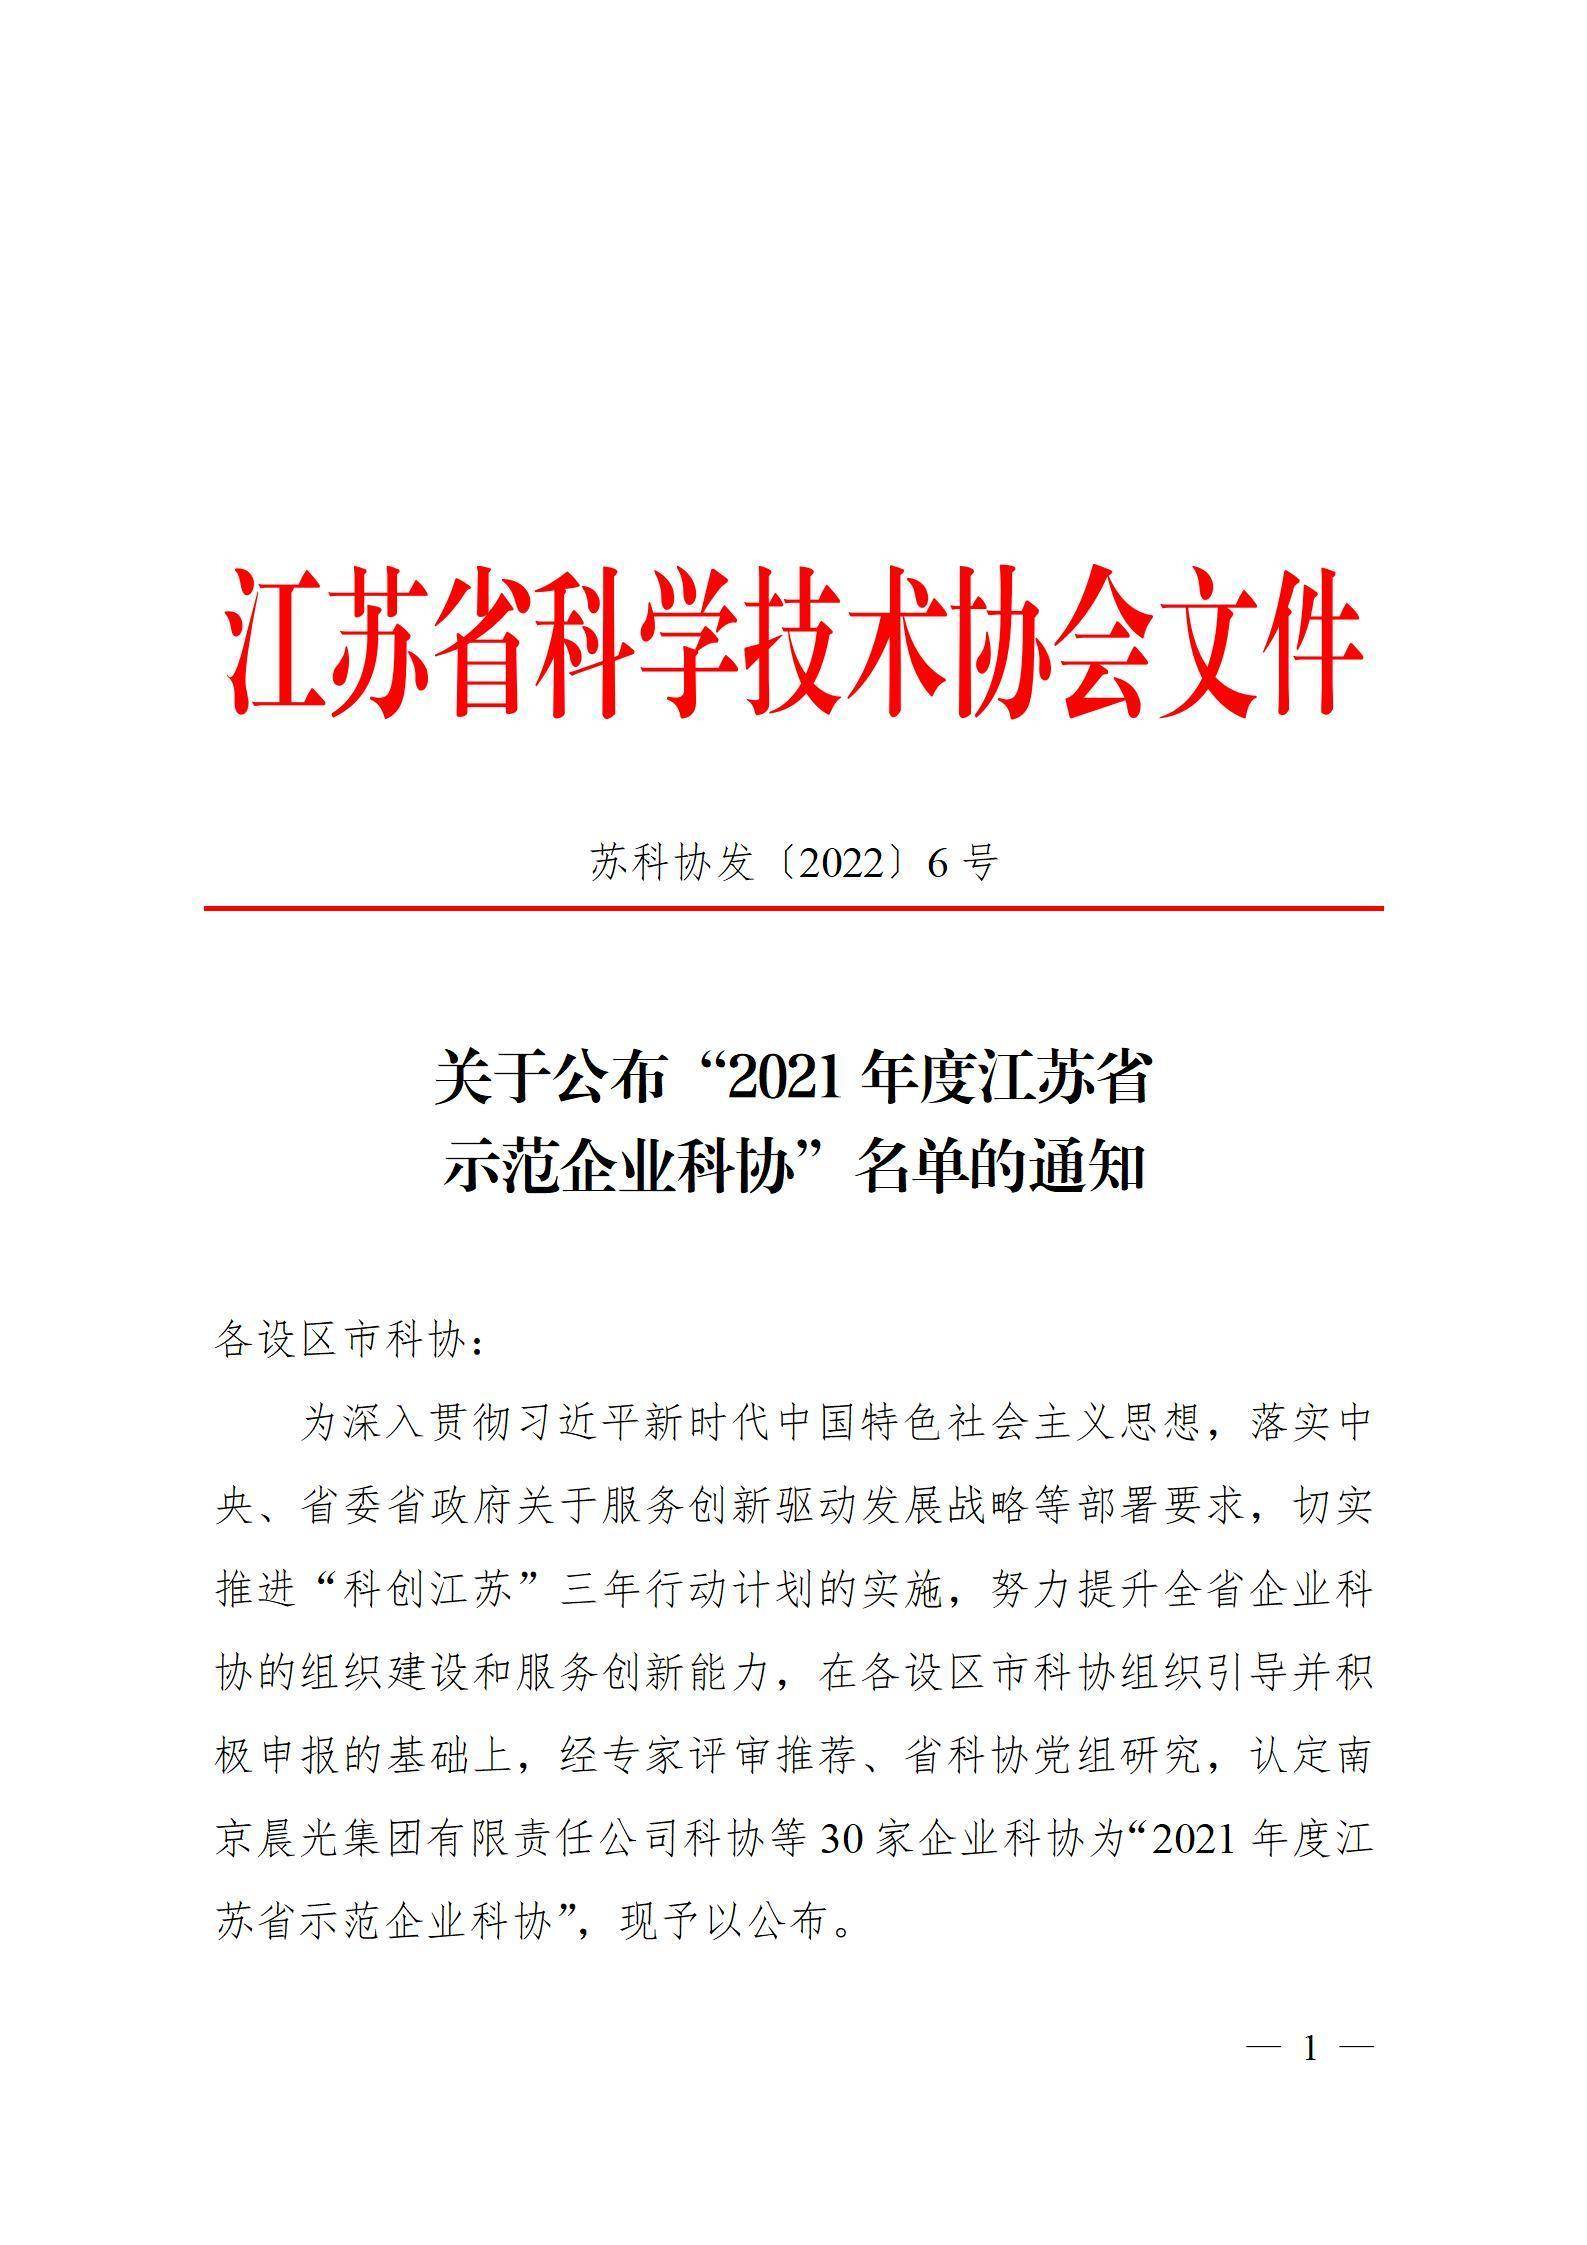 关于公布“2021年度江苏省示范企业科协”单位的通知_01.jpg